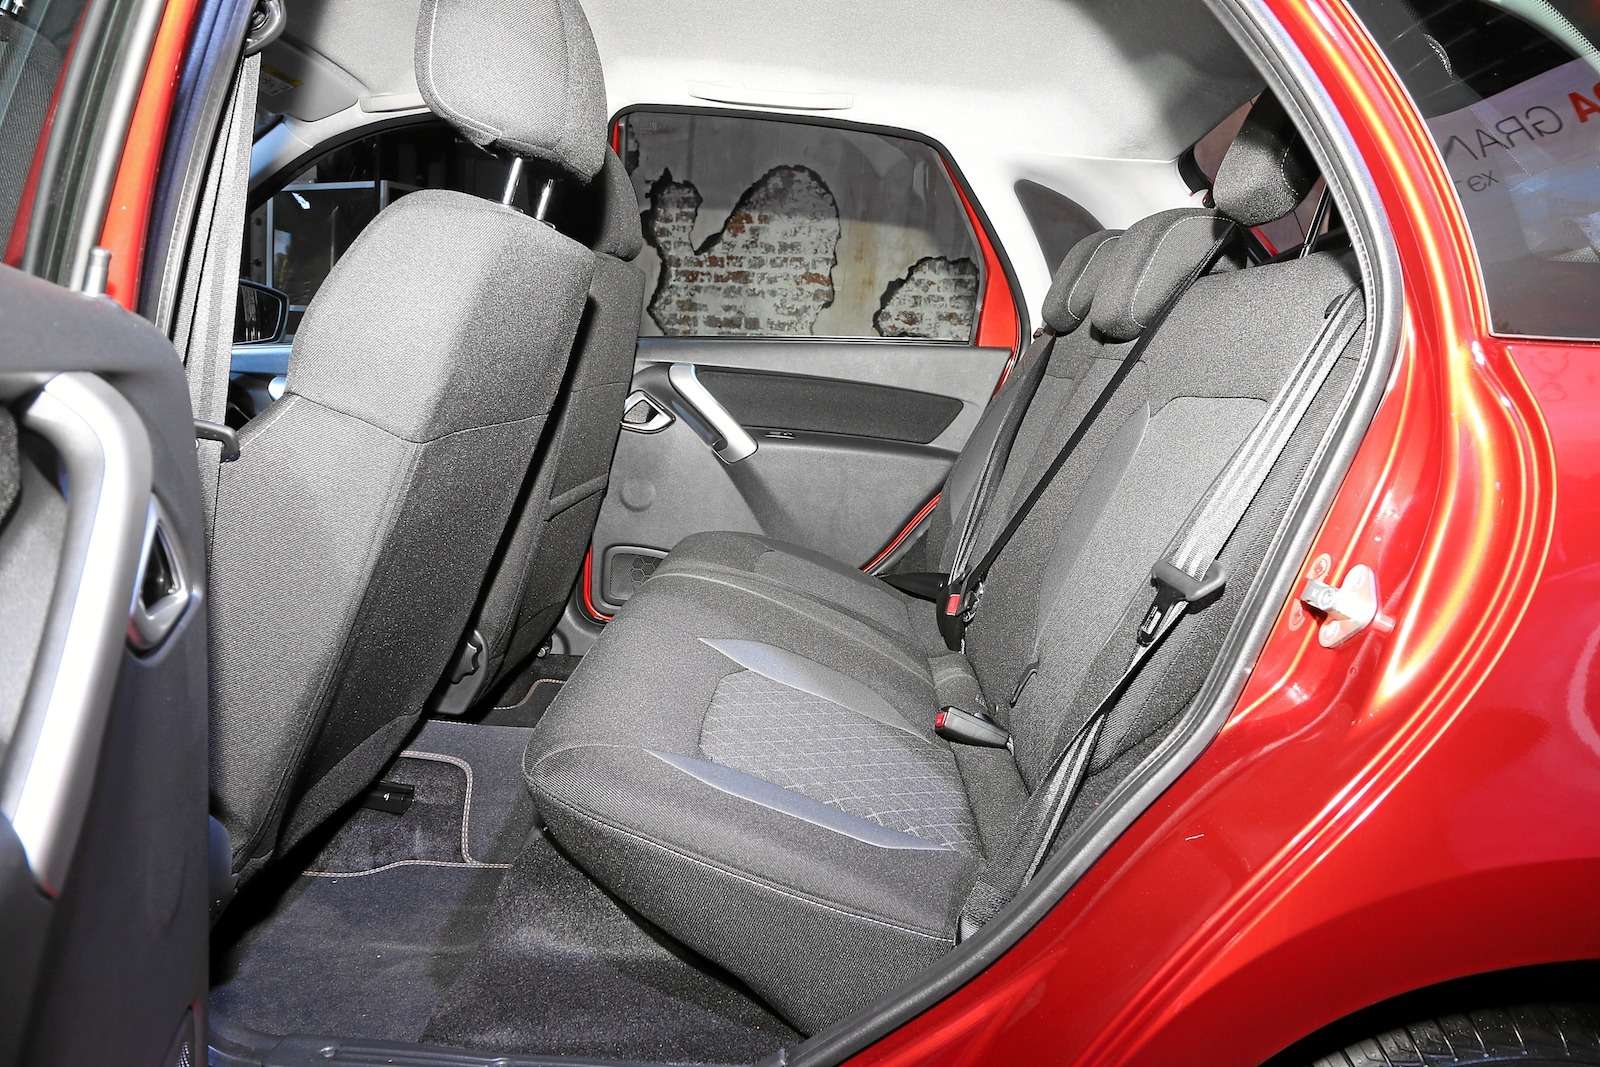 Обновленная Lada Granta представлена официально. И нет, она не подорожала! — фото 899812